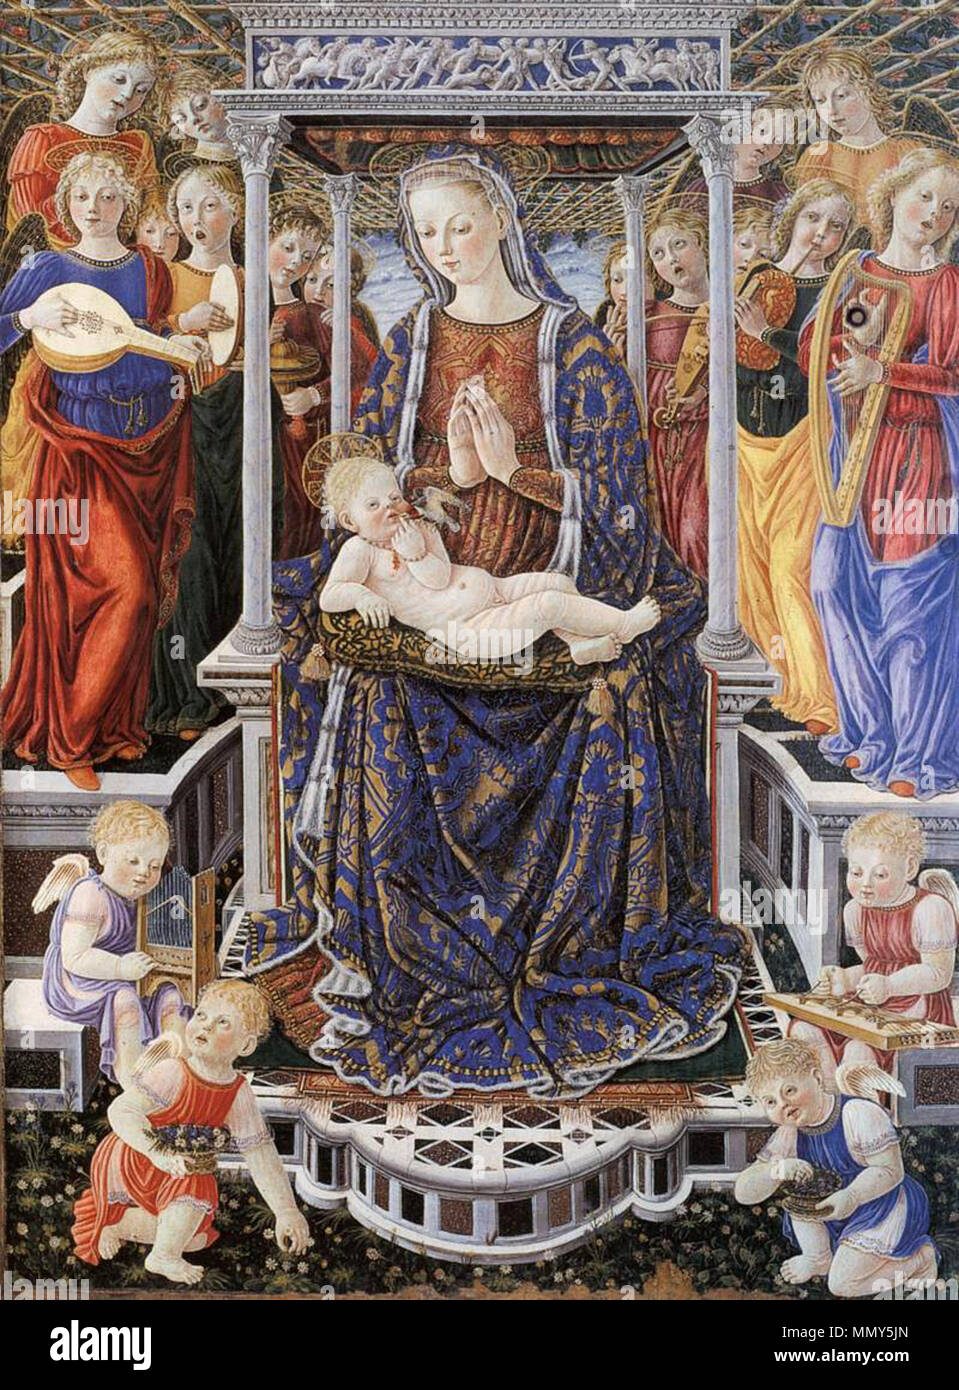 Madonna mit Kind auf dem Thron mit Music-Making Engel. ca. 1455. Giovanni di Piermatteo Boccati - Madonna mit Kind auf dem Thron mit Music-Making Engel - WGA 02325 Stockfoto